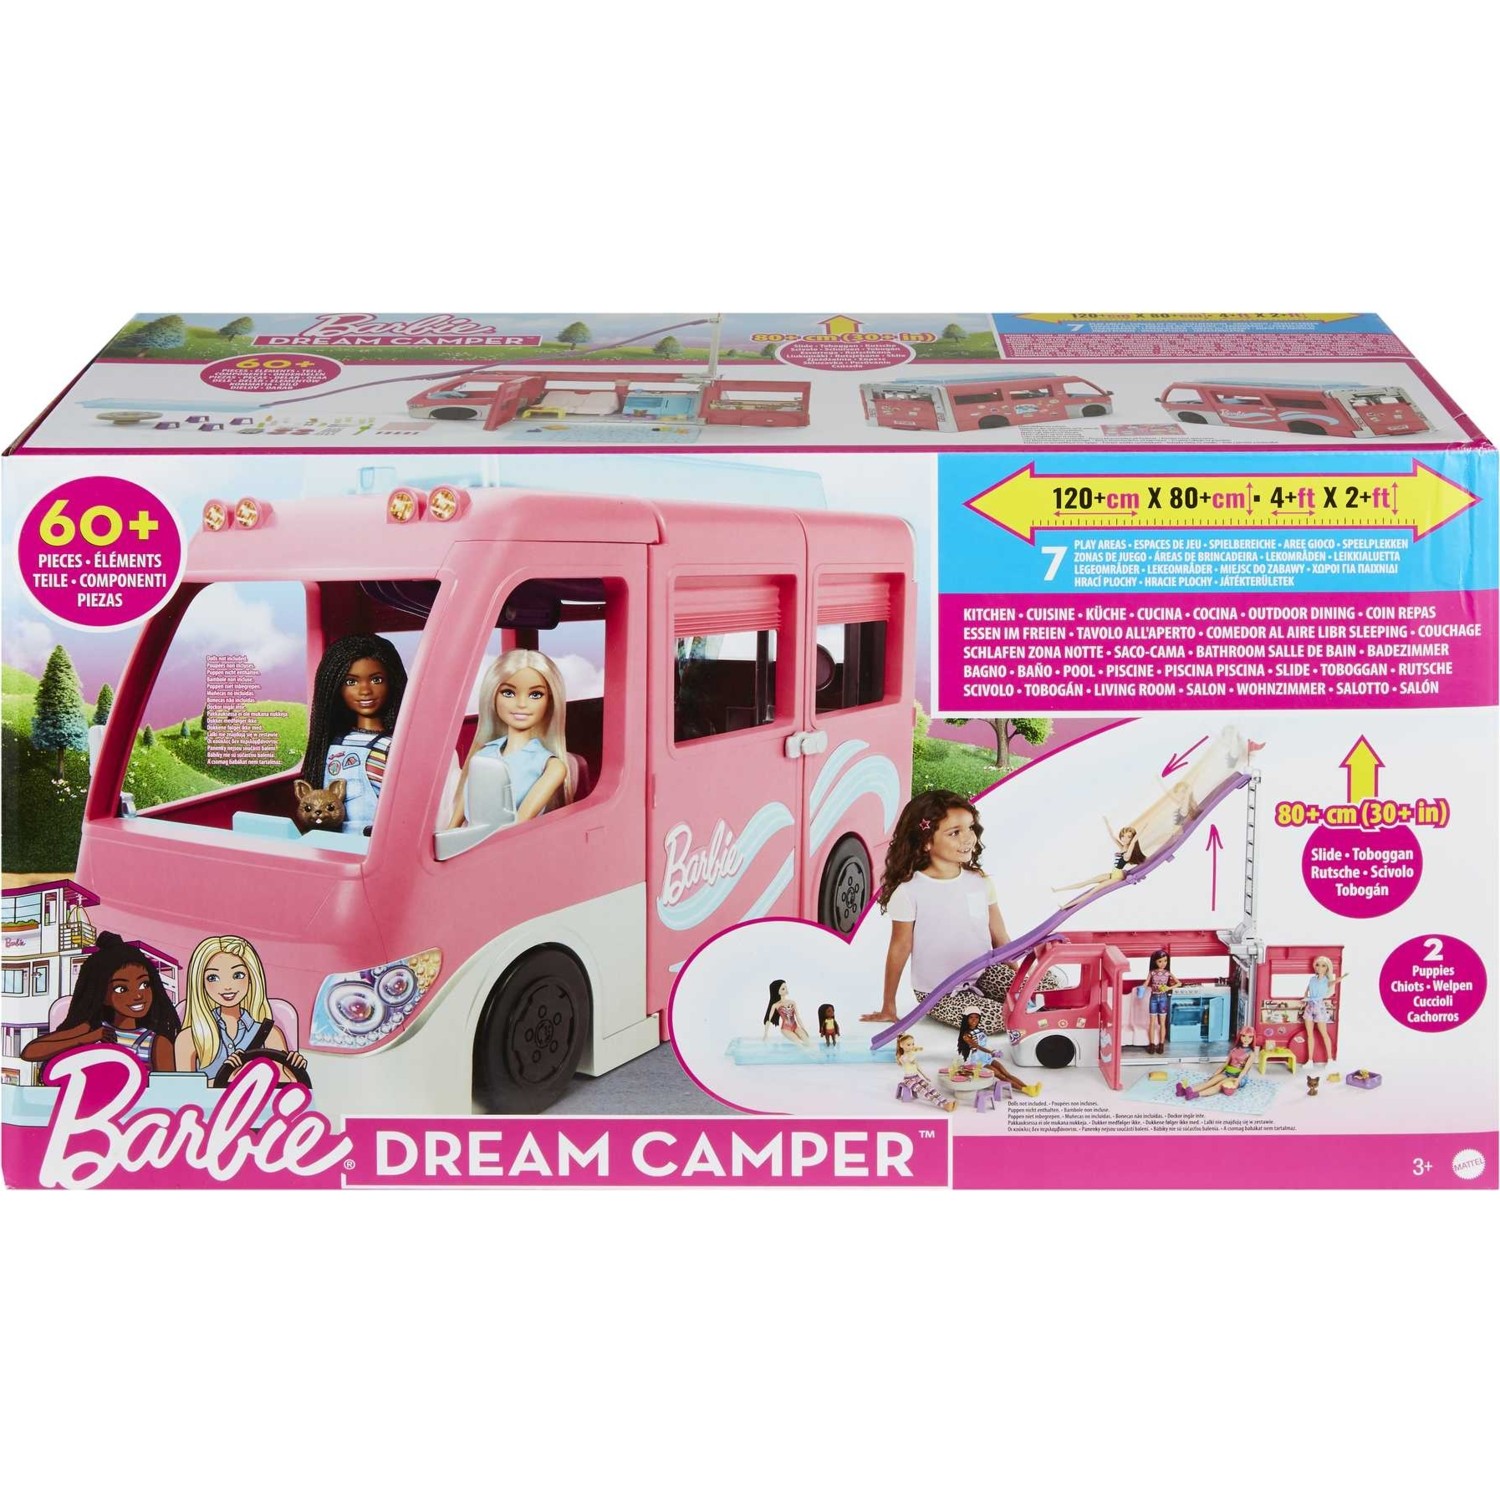 автомобиль barbie super adventure camper высотой 76 см с бассейном горкой и более 60 аксессуарами Трейлер Barbie с горкой и бассейном Hcd46